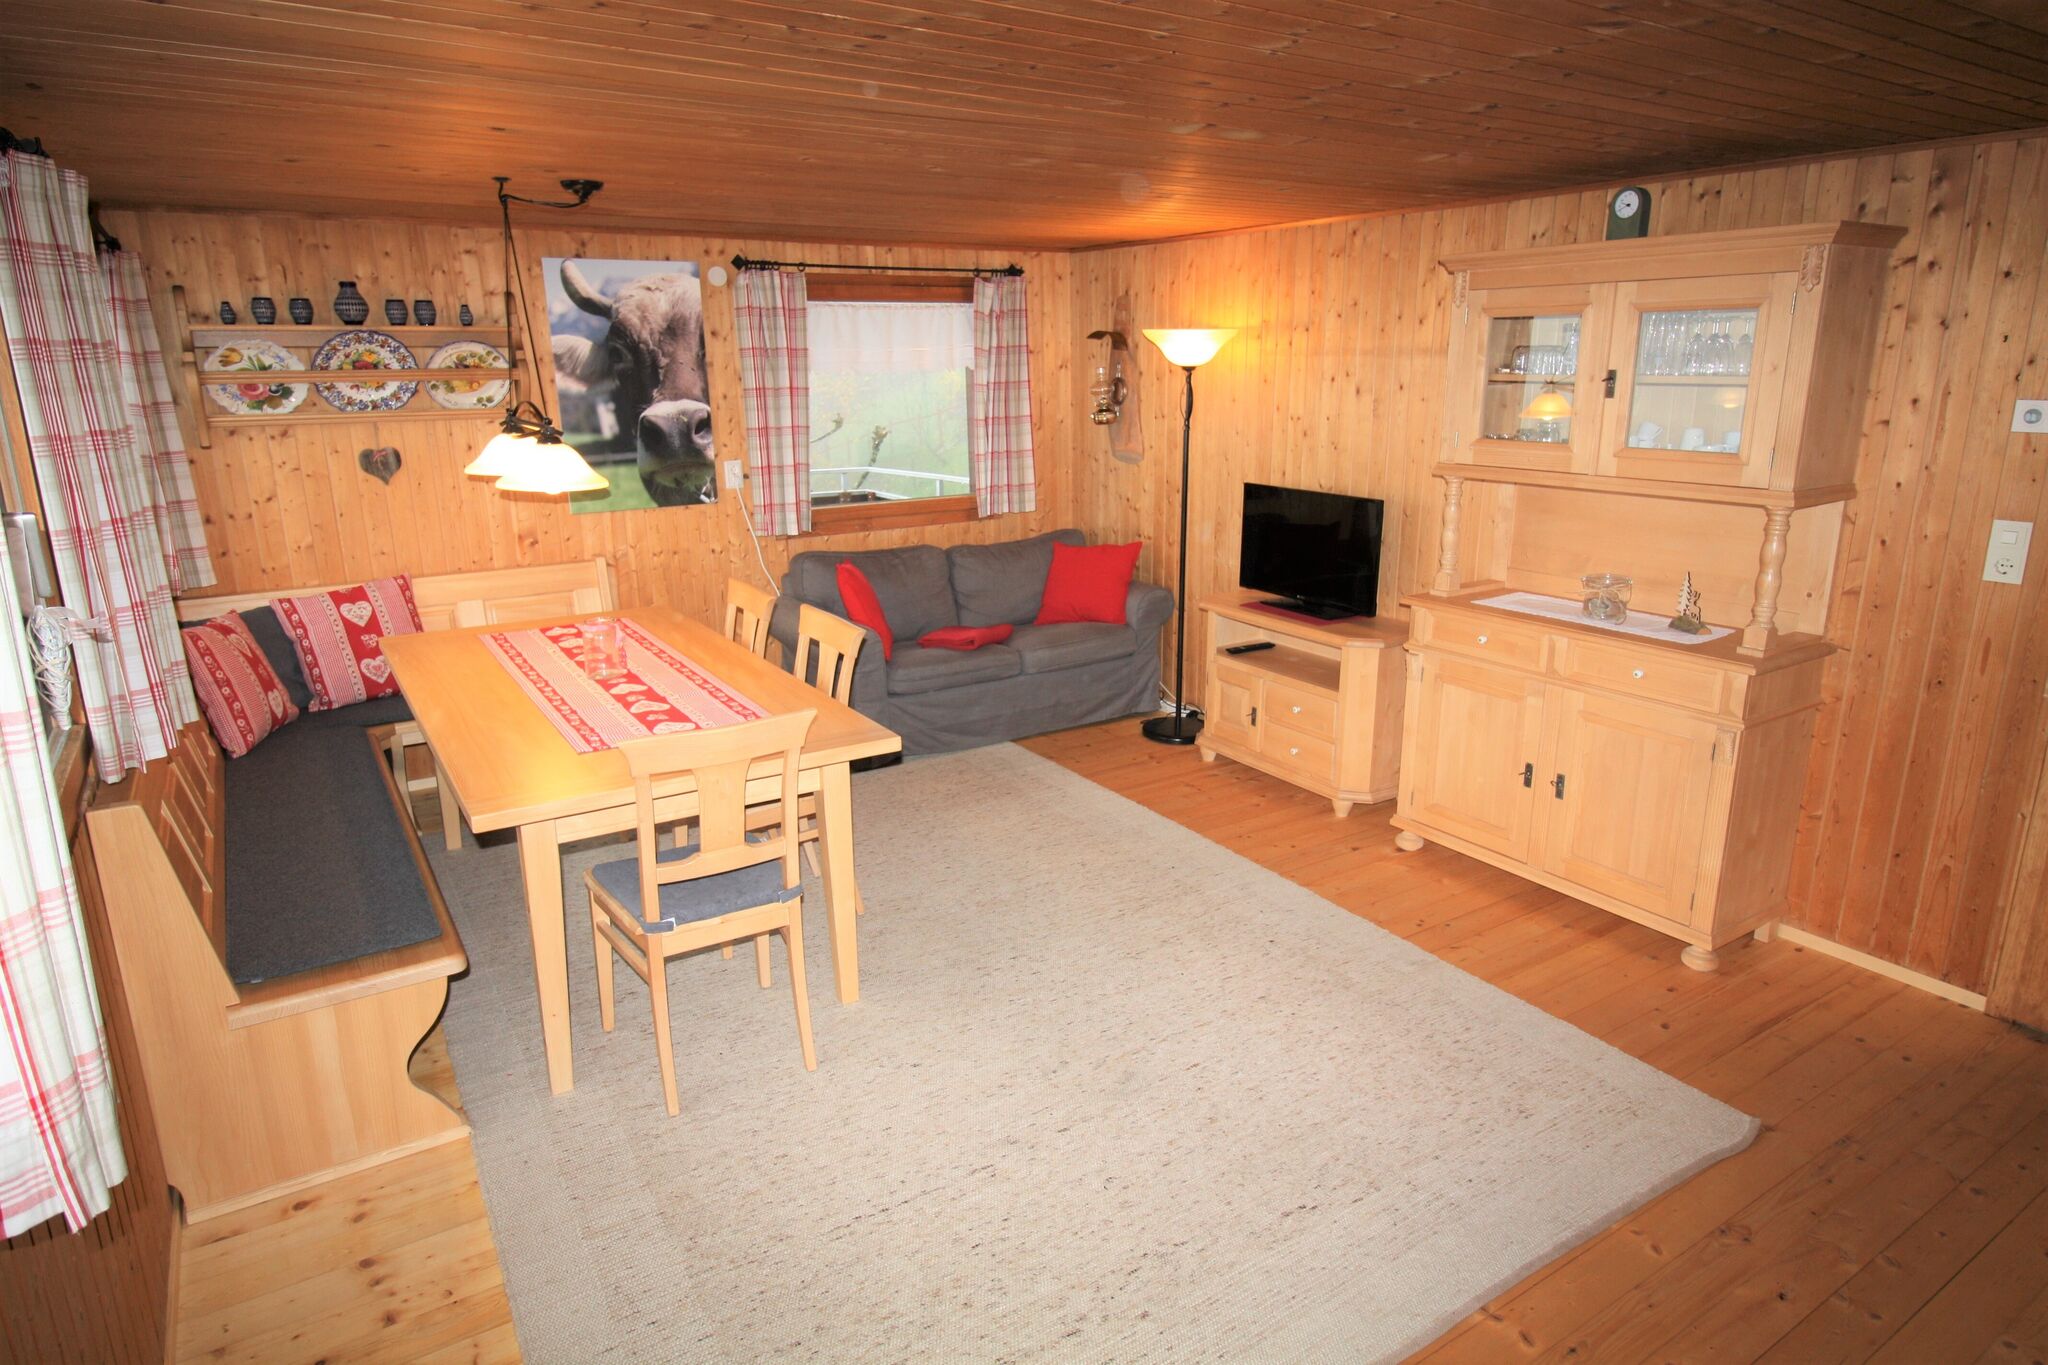 Maison de vacances confortable à Egg près du domaine skiable